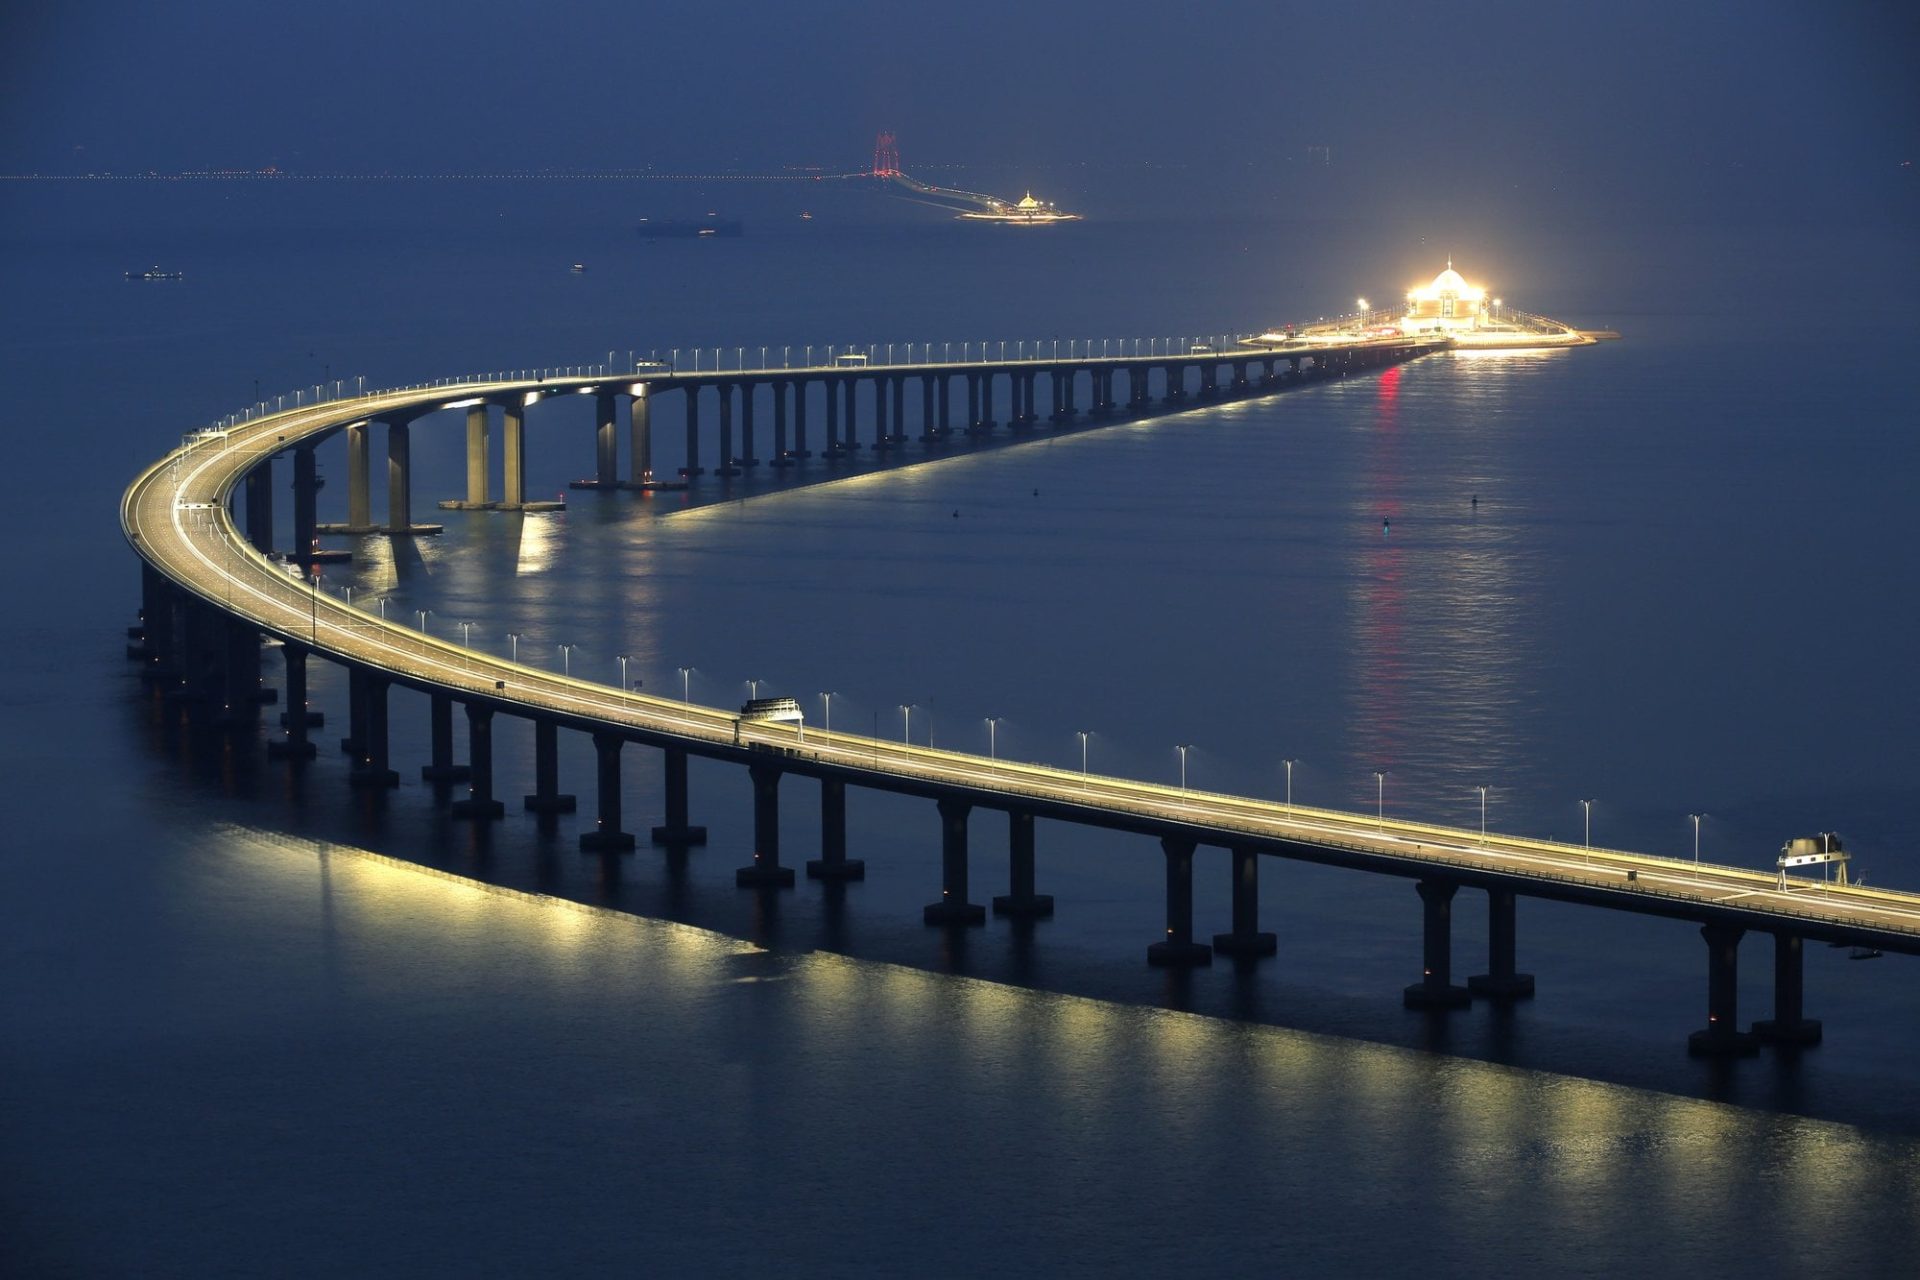 "China-Zhuhai-Macau-Hong Kong Bridge"